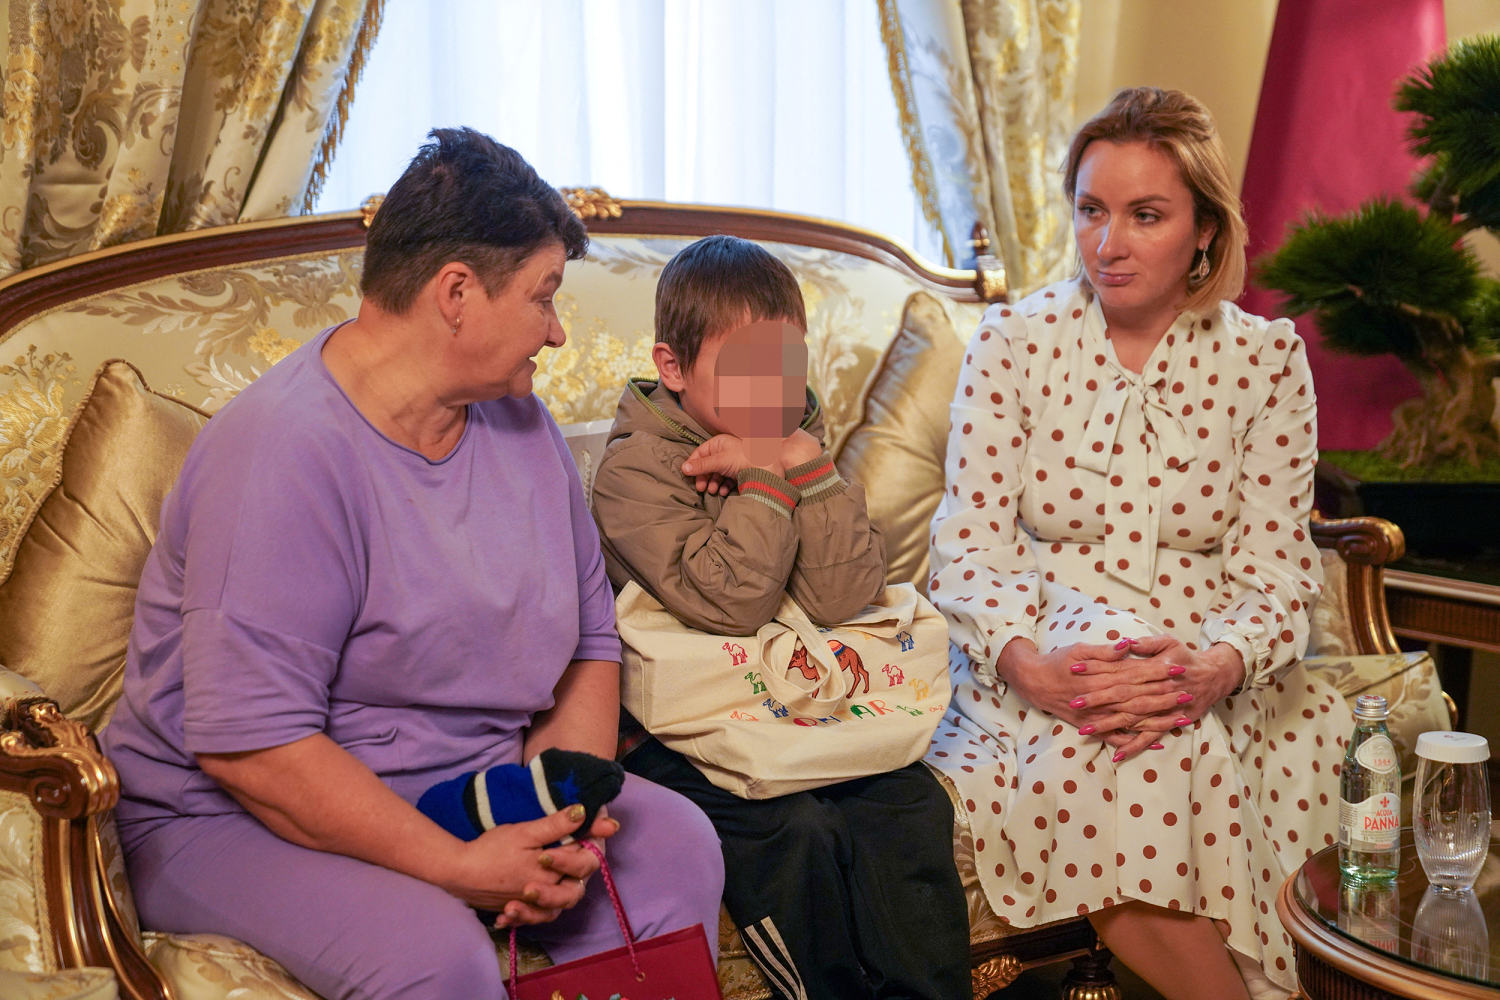 Qatar to return three Ukrainian children from Russia after repatriation talks